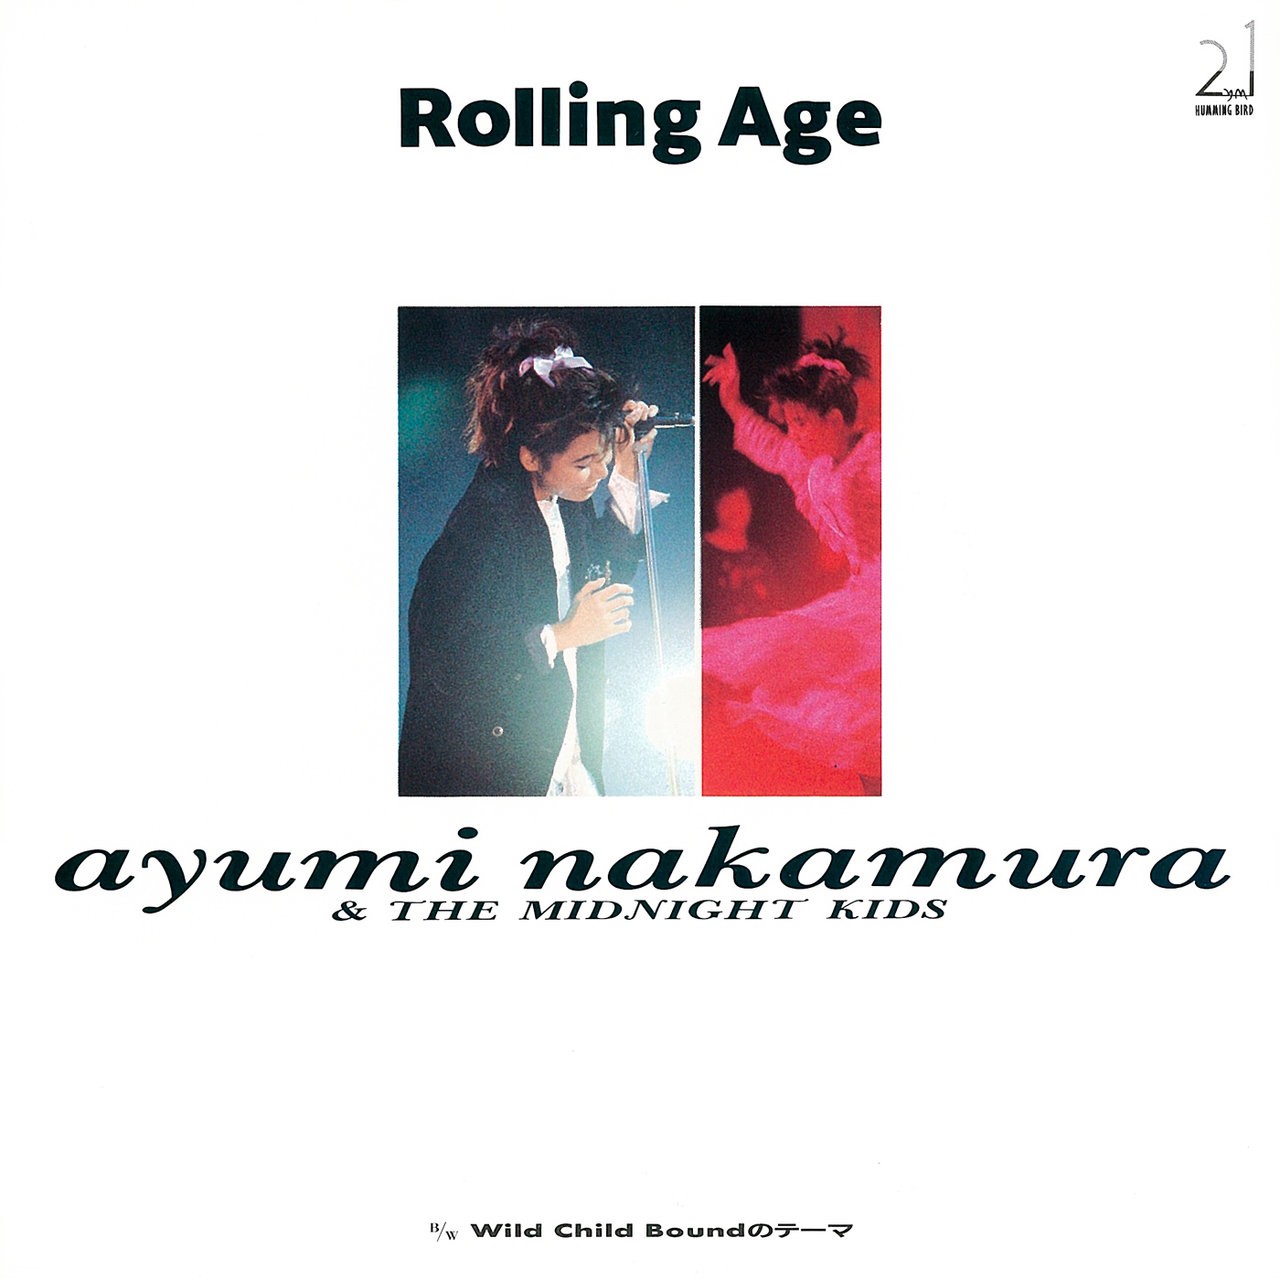 Ayumi Nakamura (中村あゆみ) – Rolling Age ⁄ Wild Child Boundのテーマ (2019 Remastered) (1987/2019) [FLAC 24bit/48kHz]